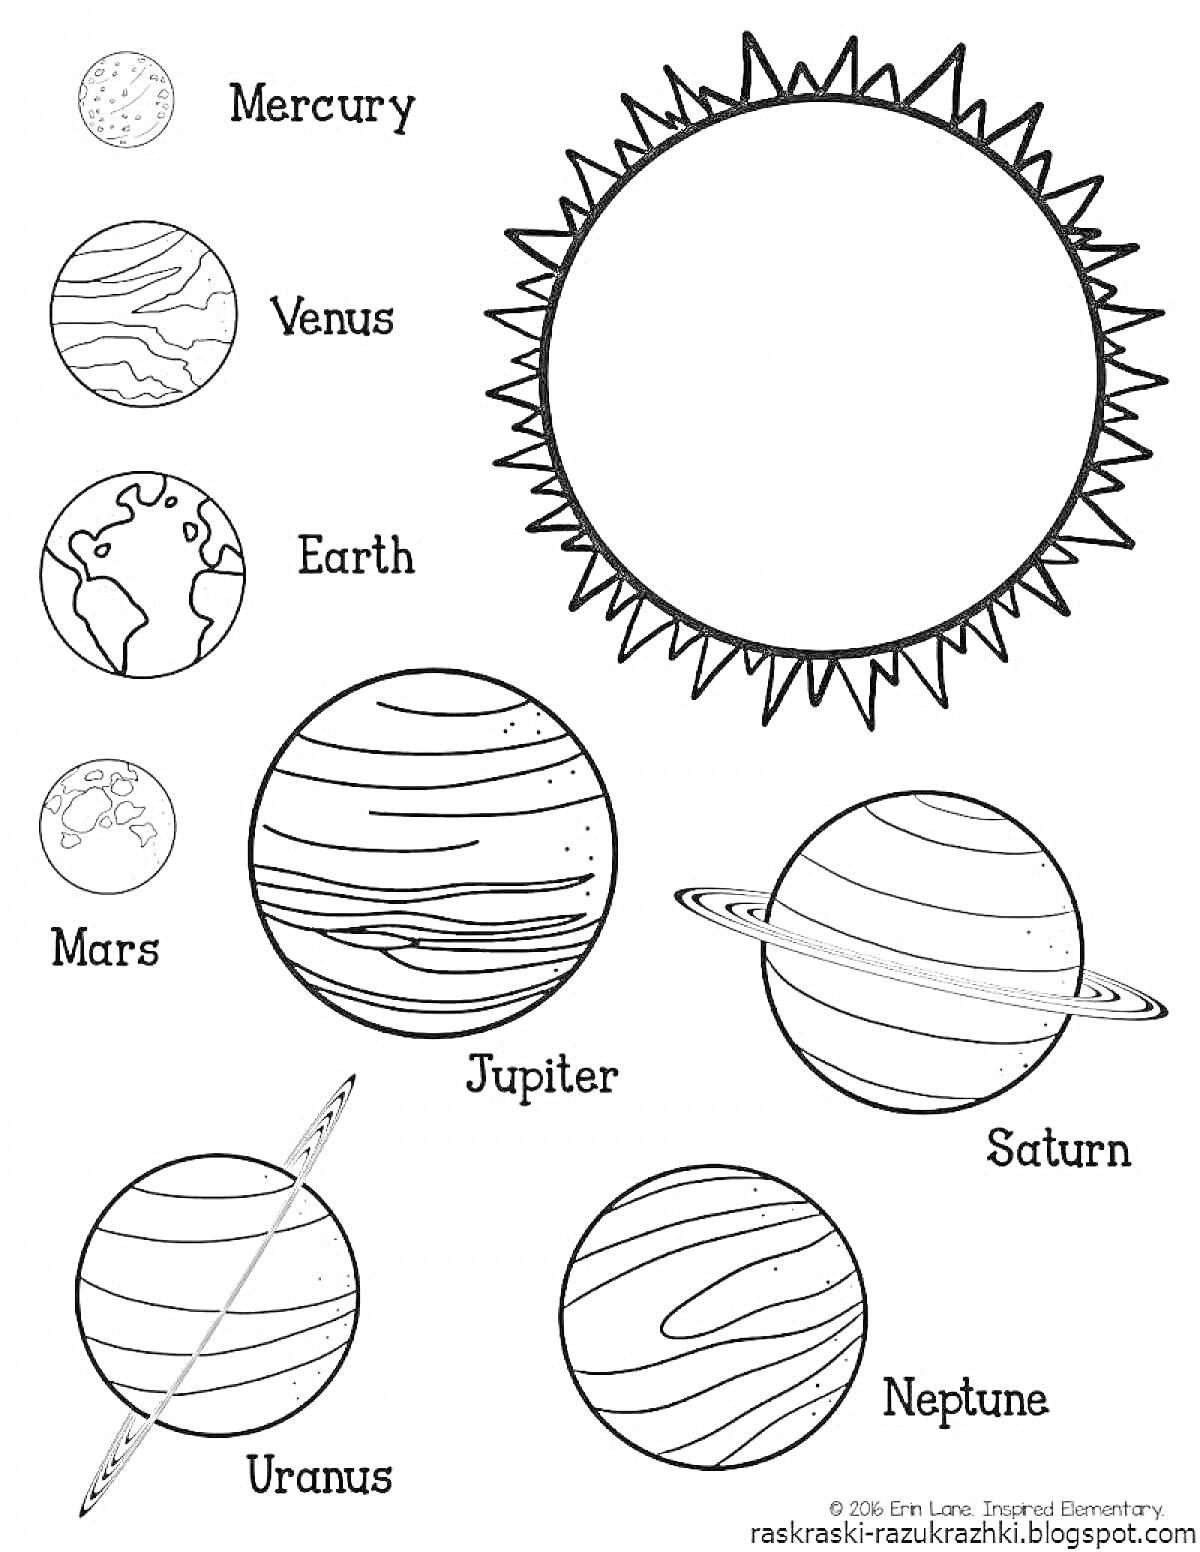 Раскраска Солнце и планеты Солнечной системы - Меркурий, Венера, Земля, Марс, Юпитер, Сатурн, Уран, Нептун